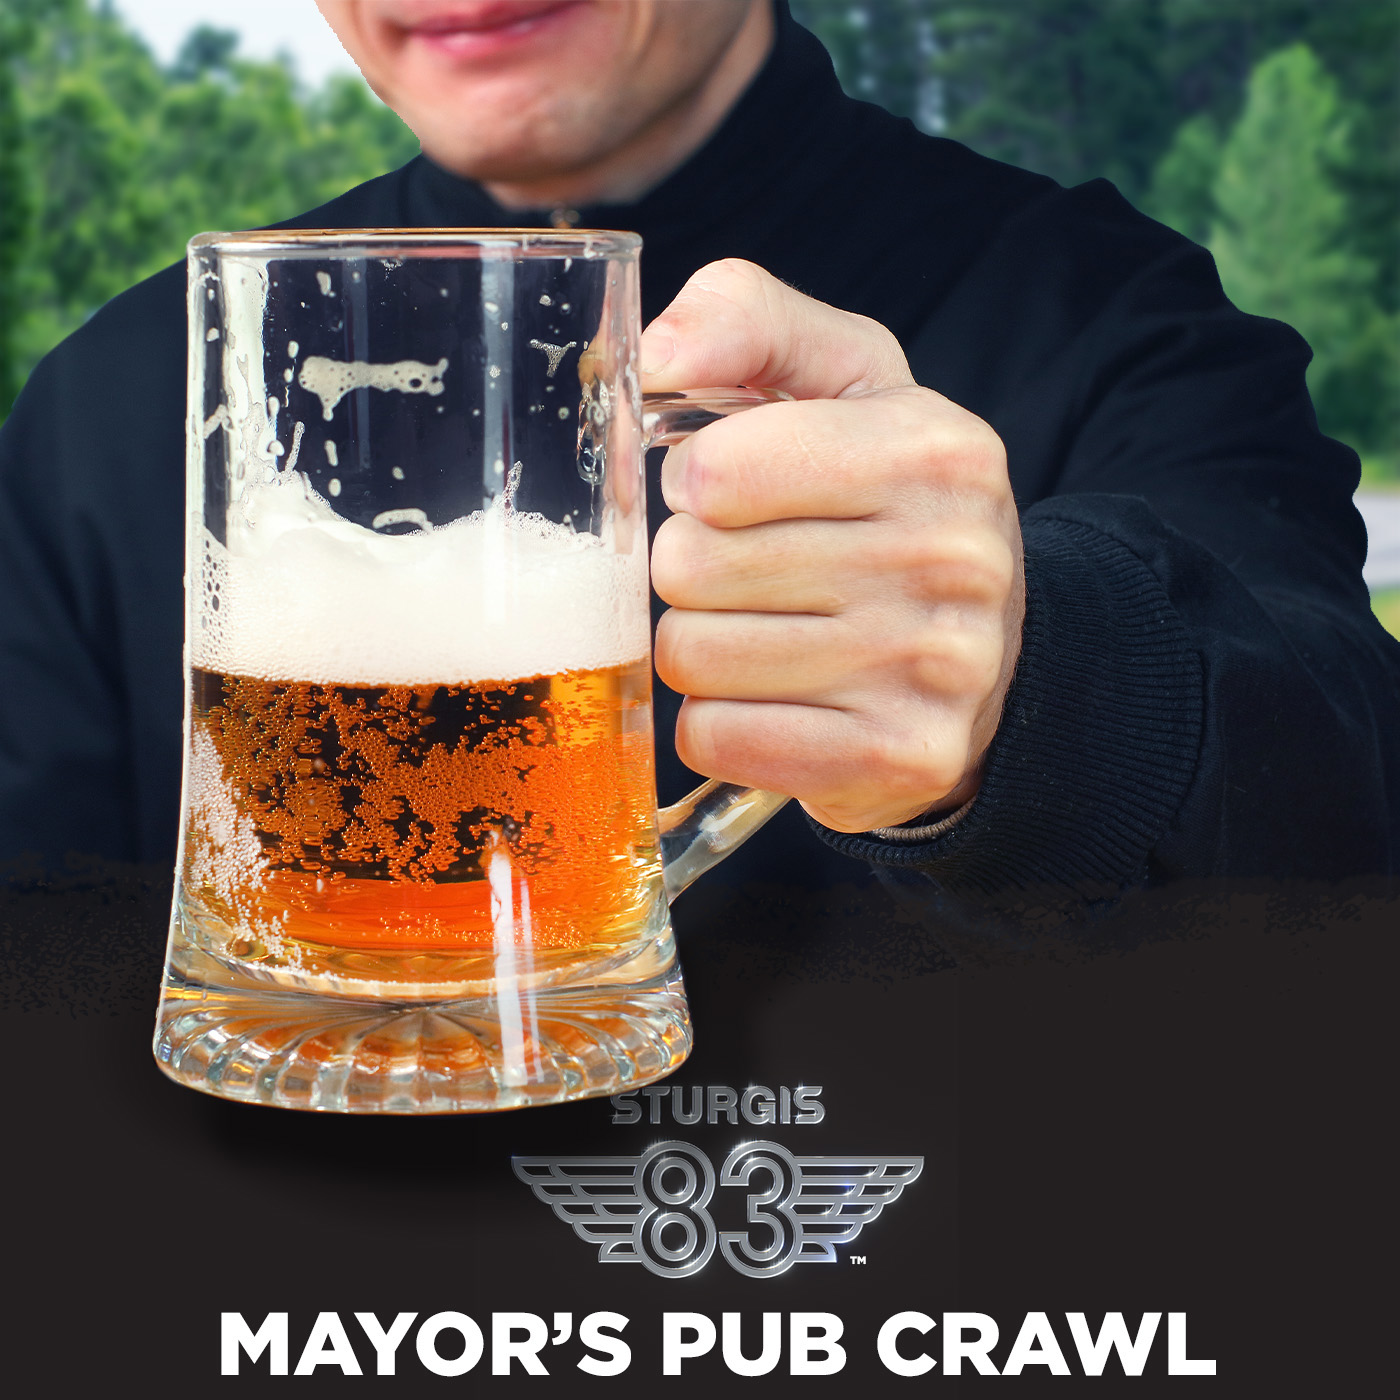 Mayor's pub crawl